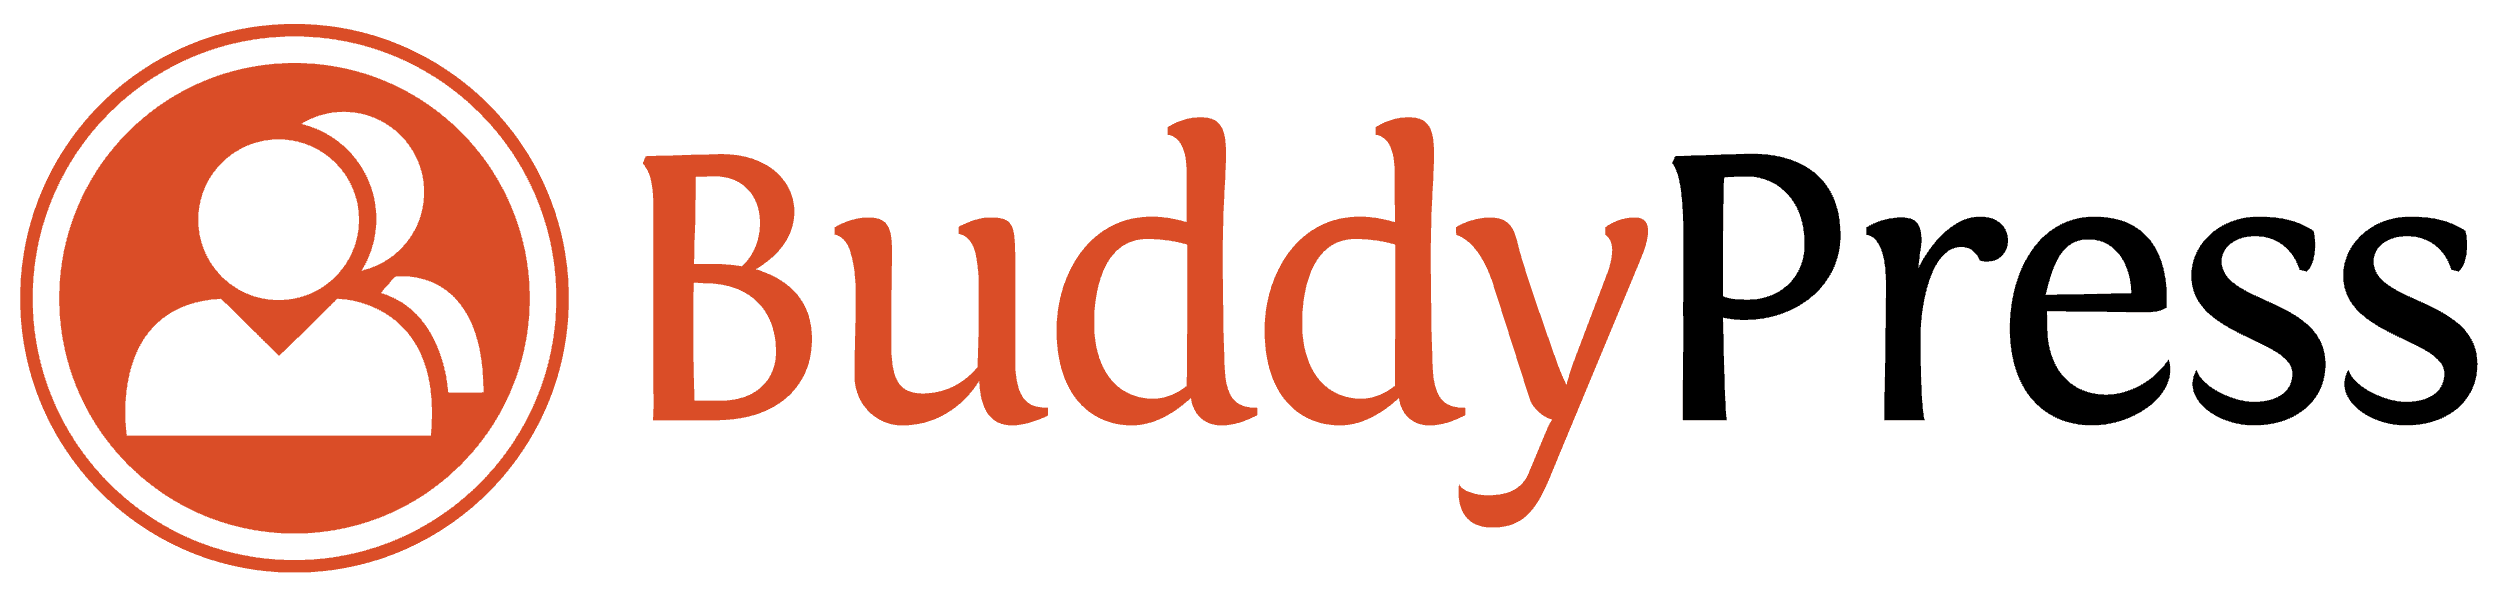 BuddyPress - Socialt nätverk för Wordpress